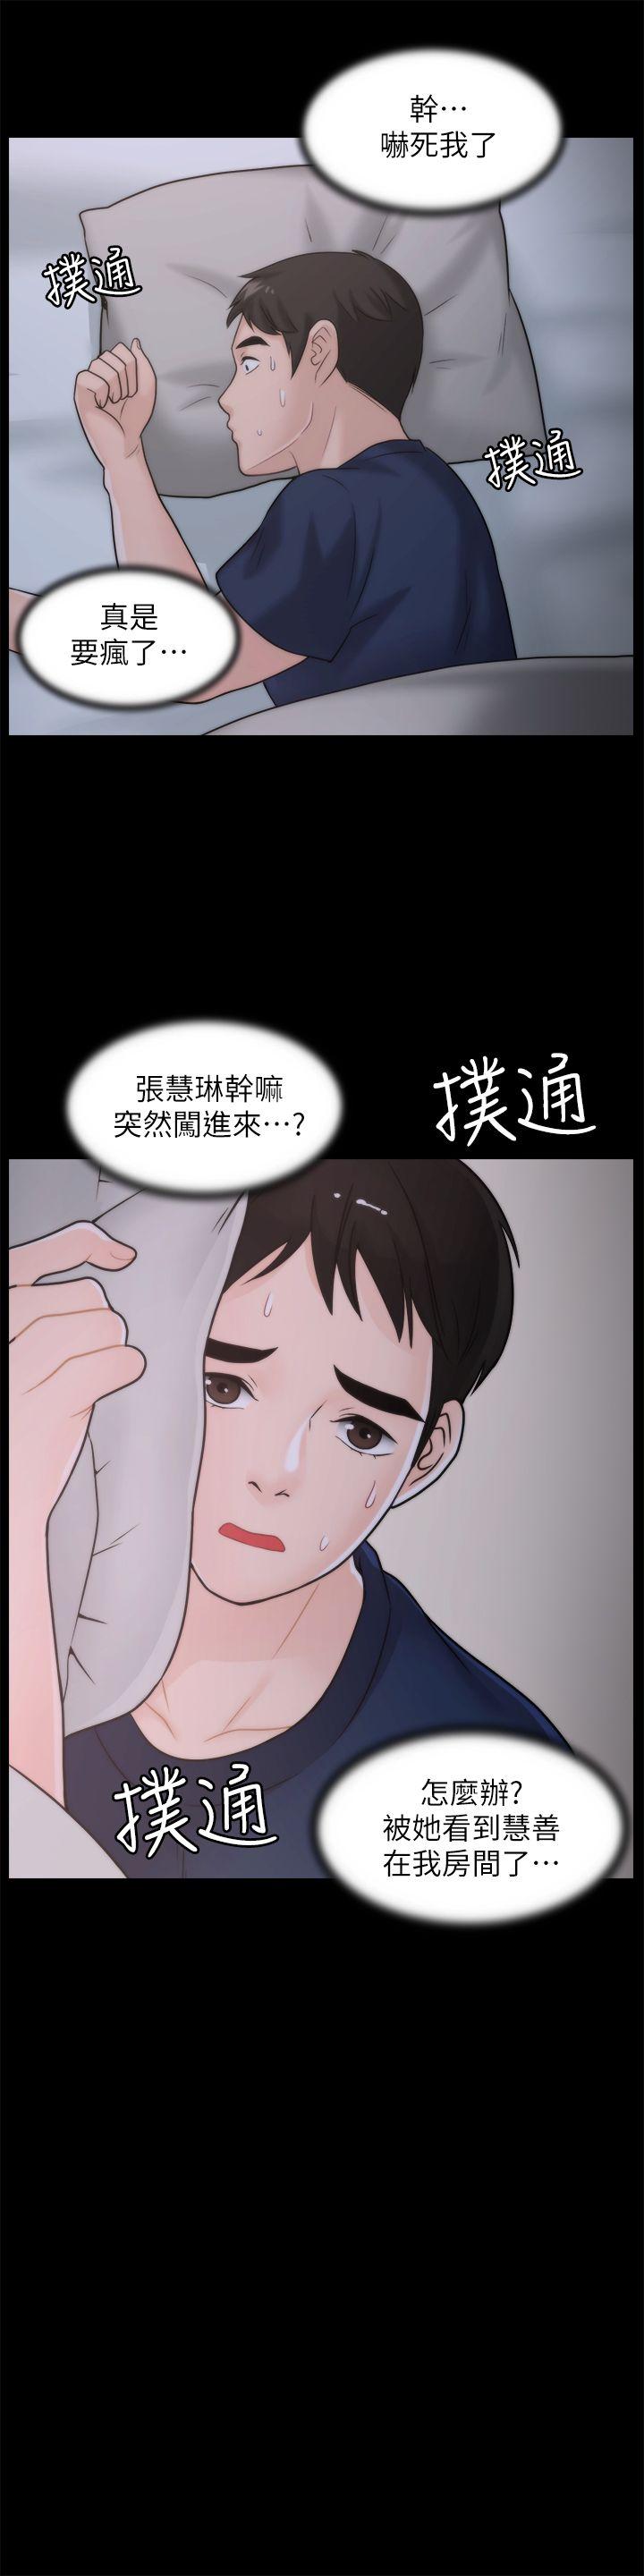 韩国污漫画 偷偷愛 第36话-瞒着慧琳和慧善幽会 9